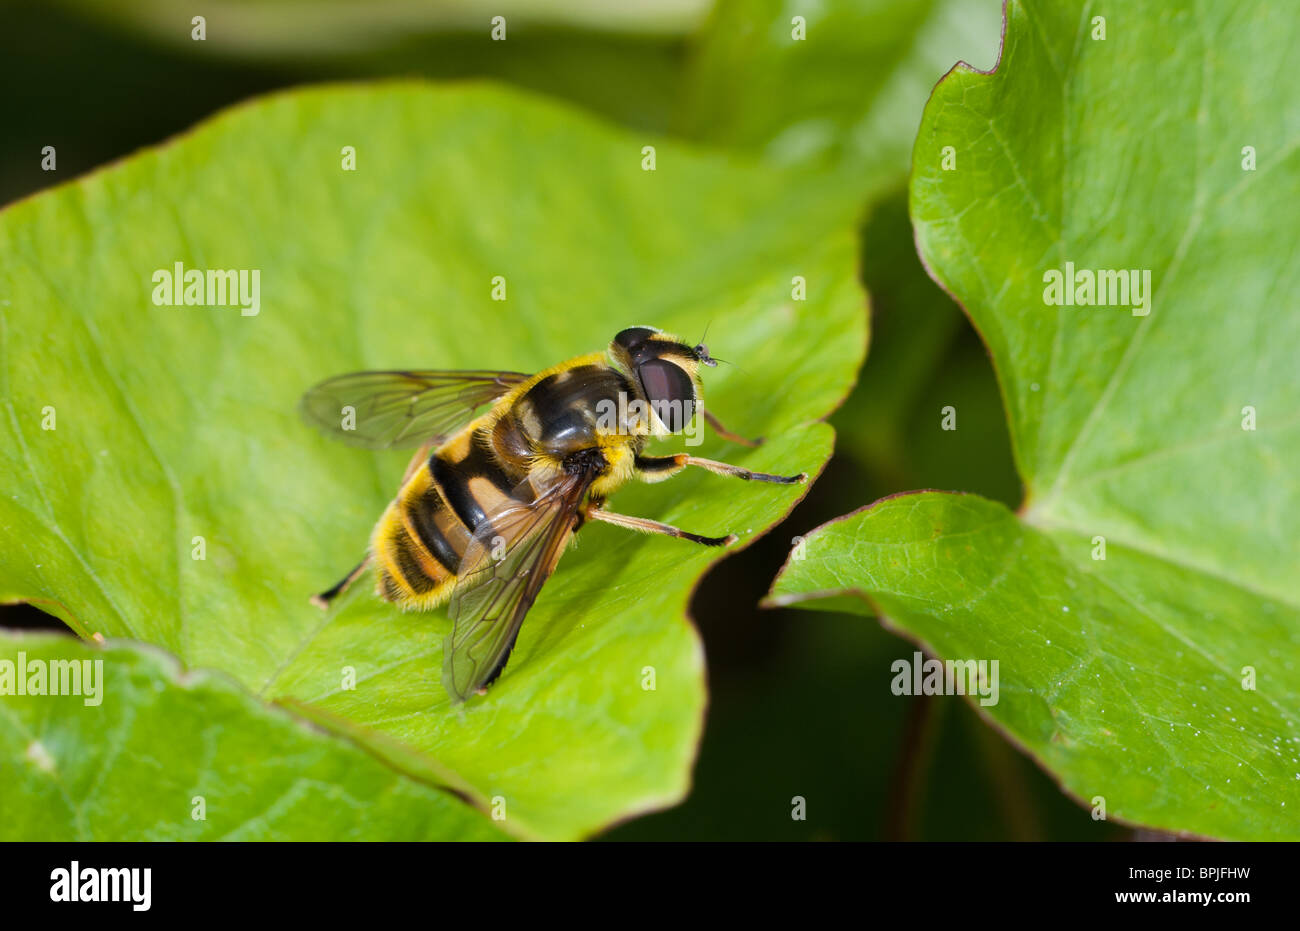 Hoverfly (Myathropa florea) Bee/Wasp mimic Stock Photo